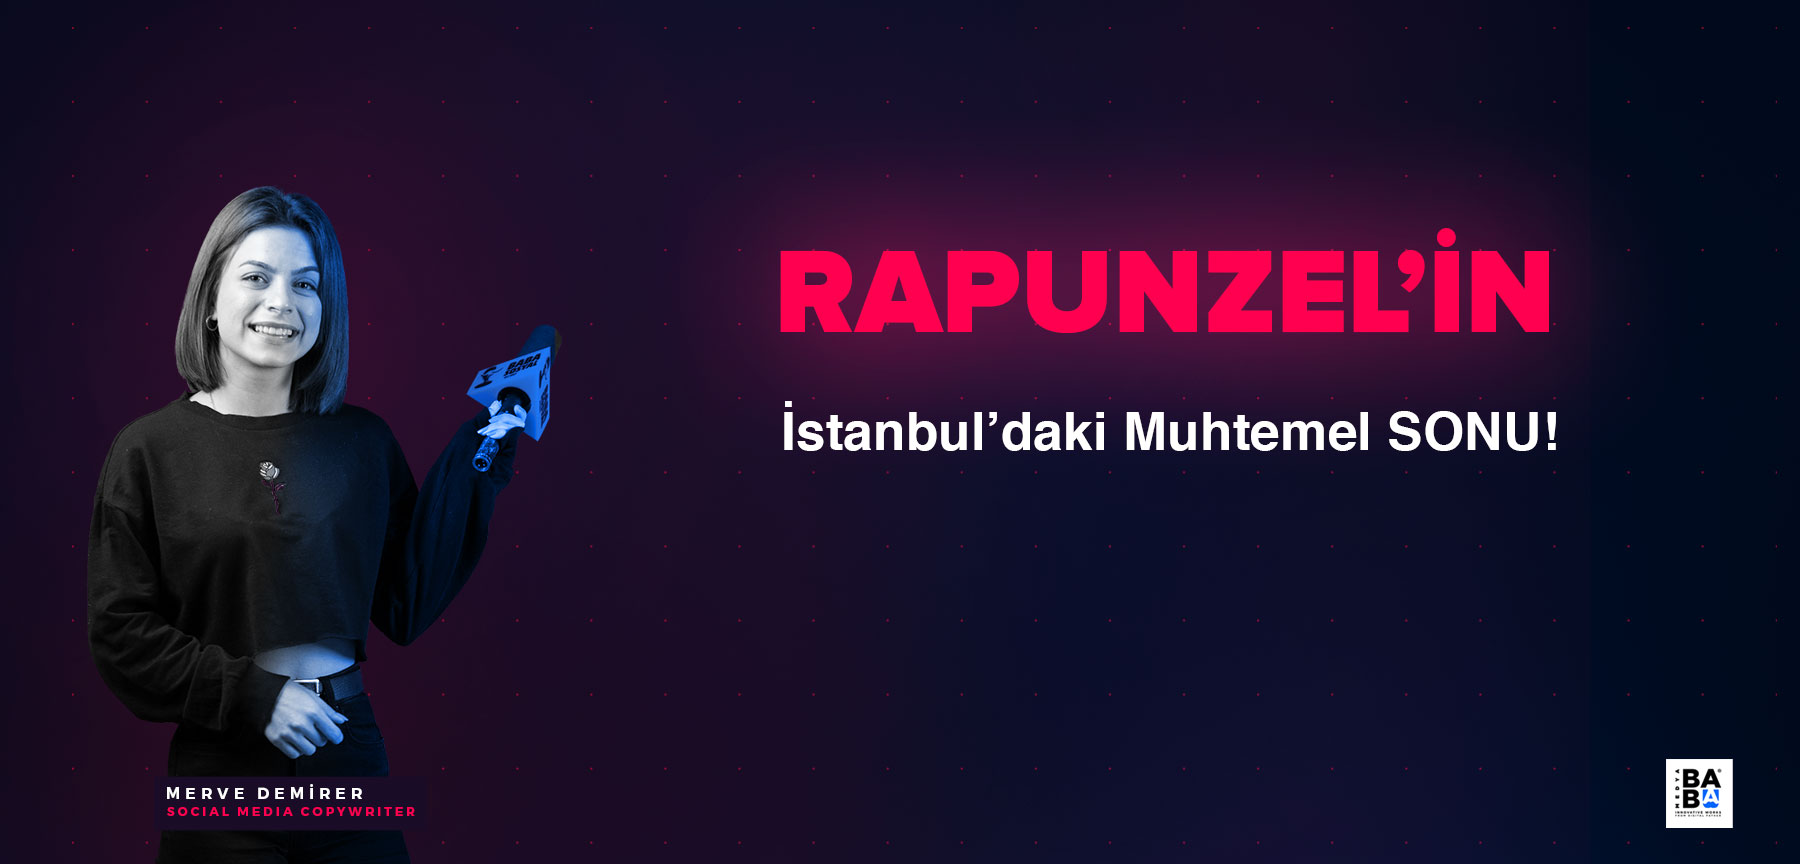 Rapunzel’in İstanbul’daki Muhtemel SONU!